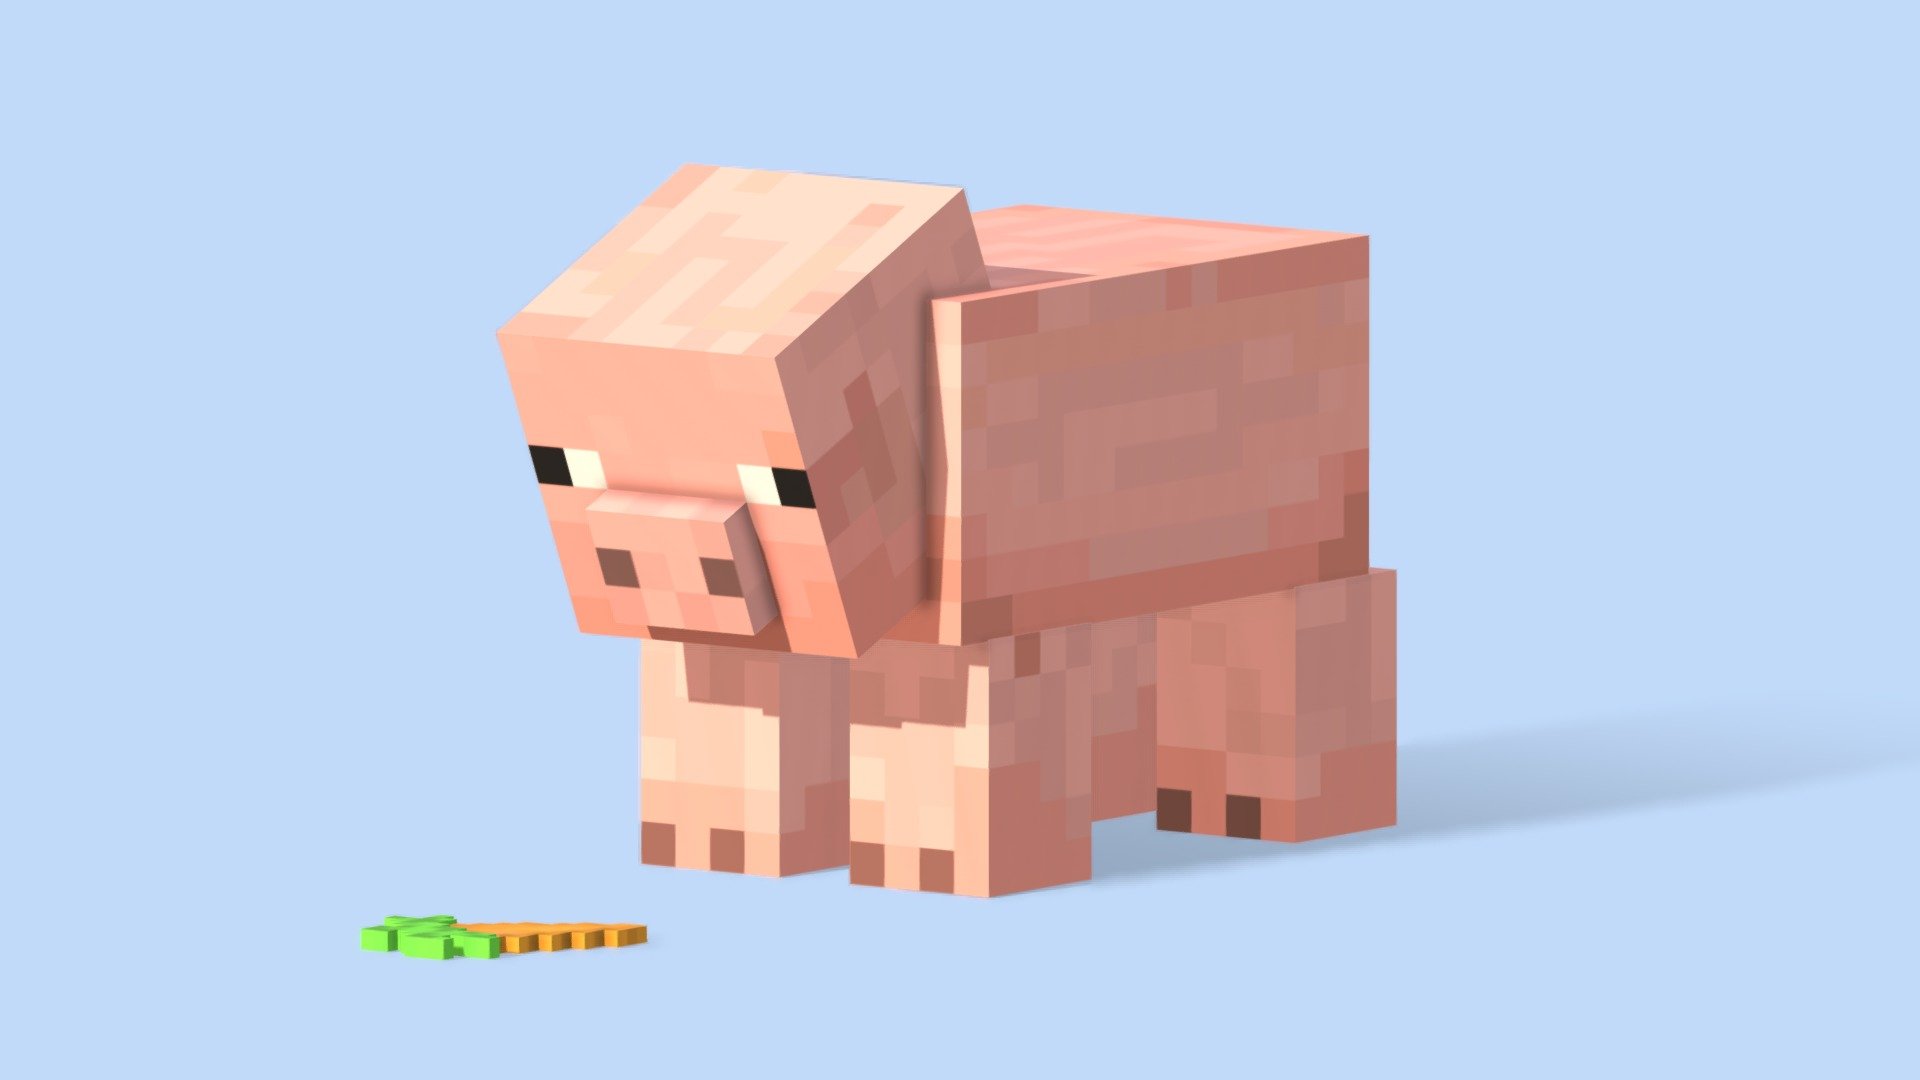 Lợn Minecraft là một trong những tượng đài của trò chơi Minecraft. Đây là một phần trong series game rất nổi tiếng và được yêu thích trên toàn thế giới. Hình ảnh liên quan sẽ giúp bạn khám phá sự độc đáo và đáng yêu của Lợn Minecraft.